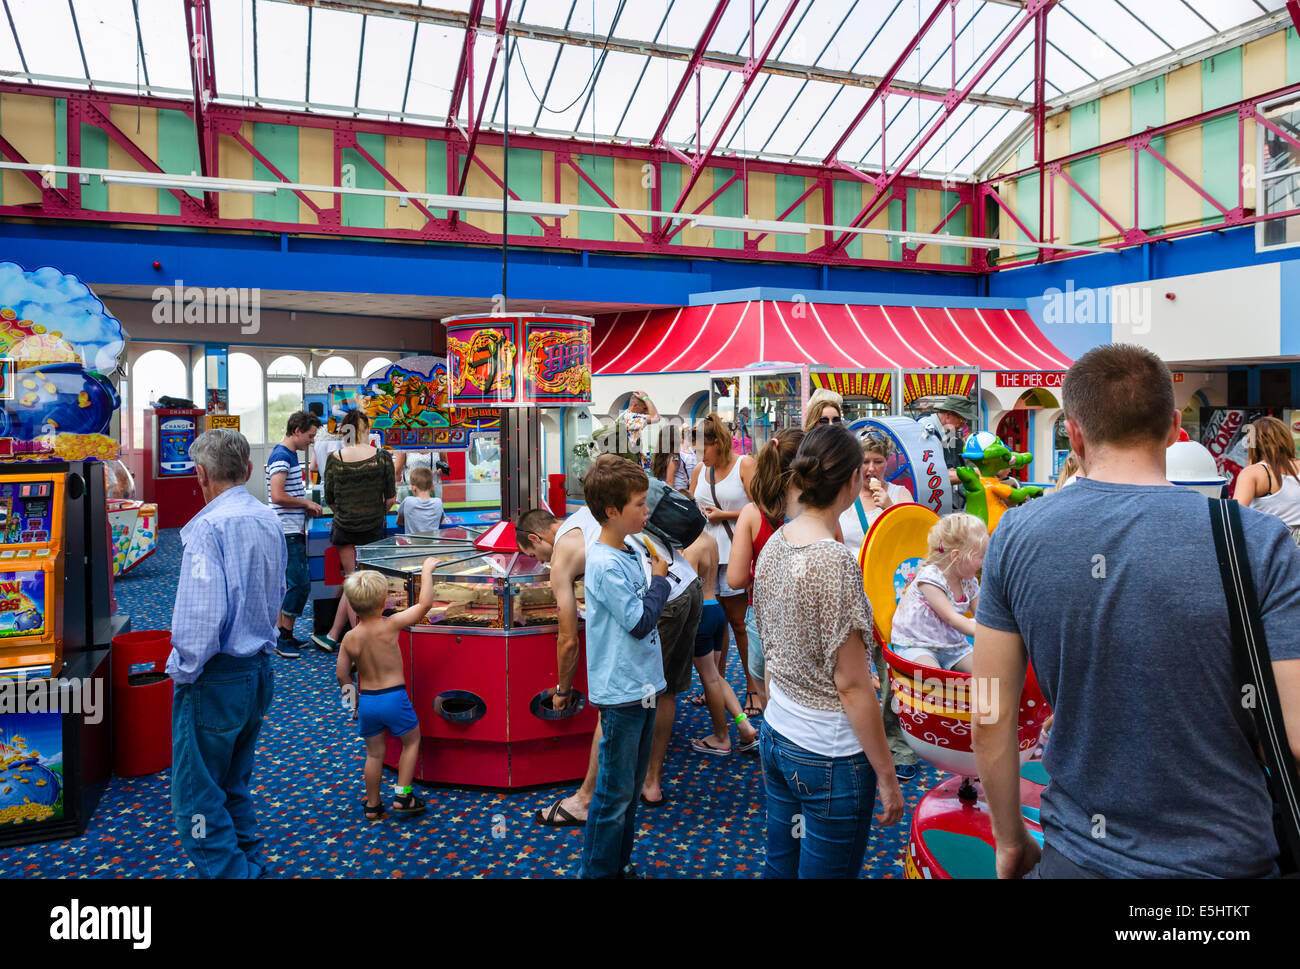 Innenministerium eine Unterhaltung arcade auf der Pier in St. Anne, Lytham St Annes, Fylde Küste, Lancashire, UK Stockfoto